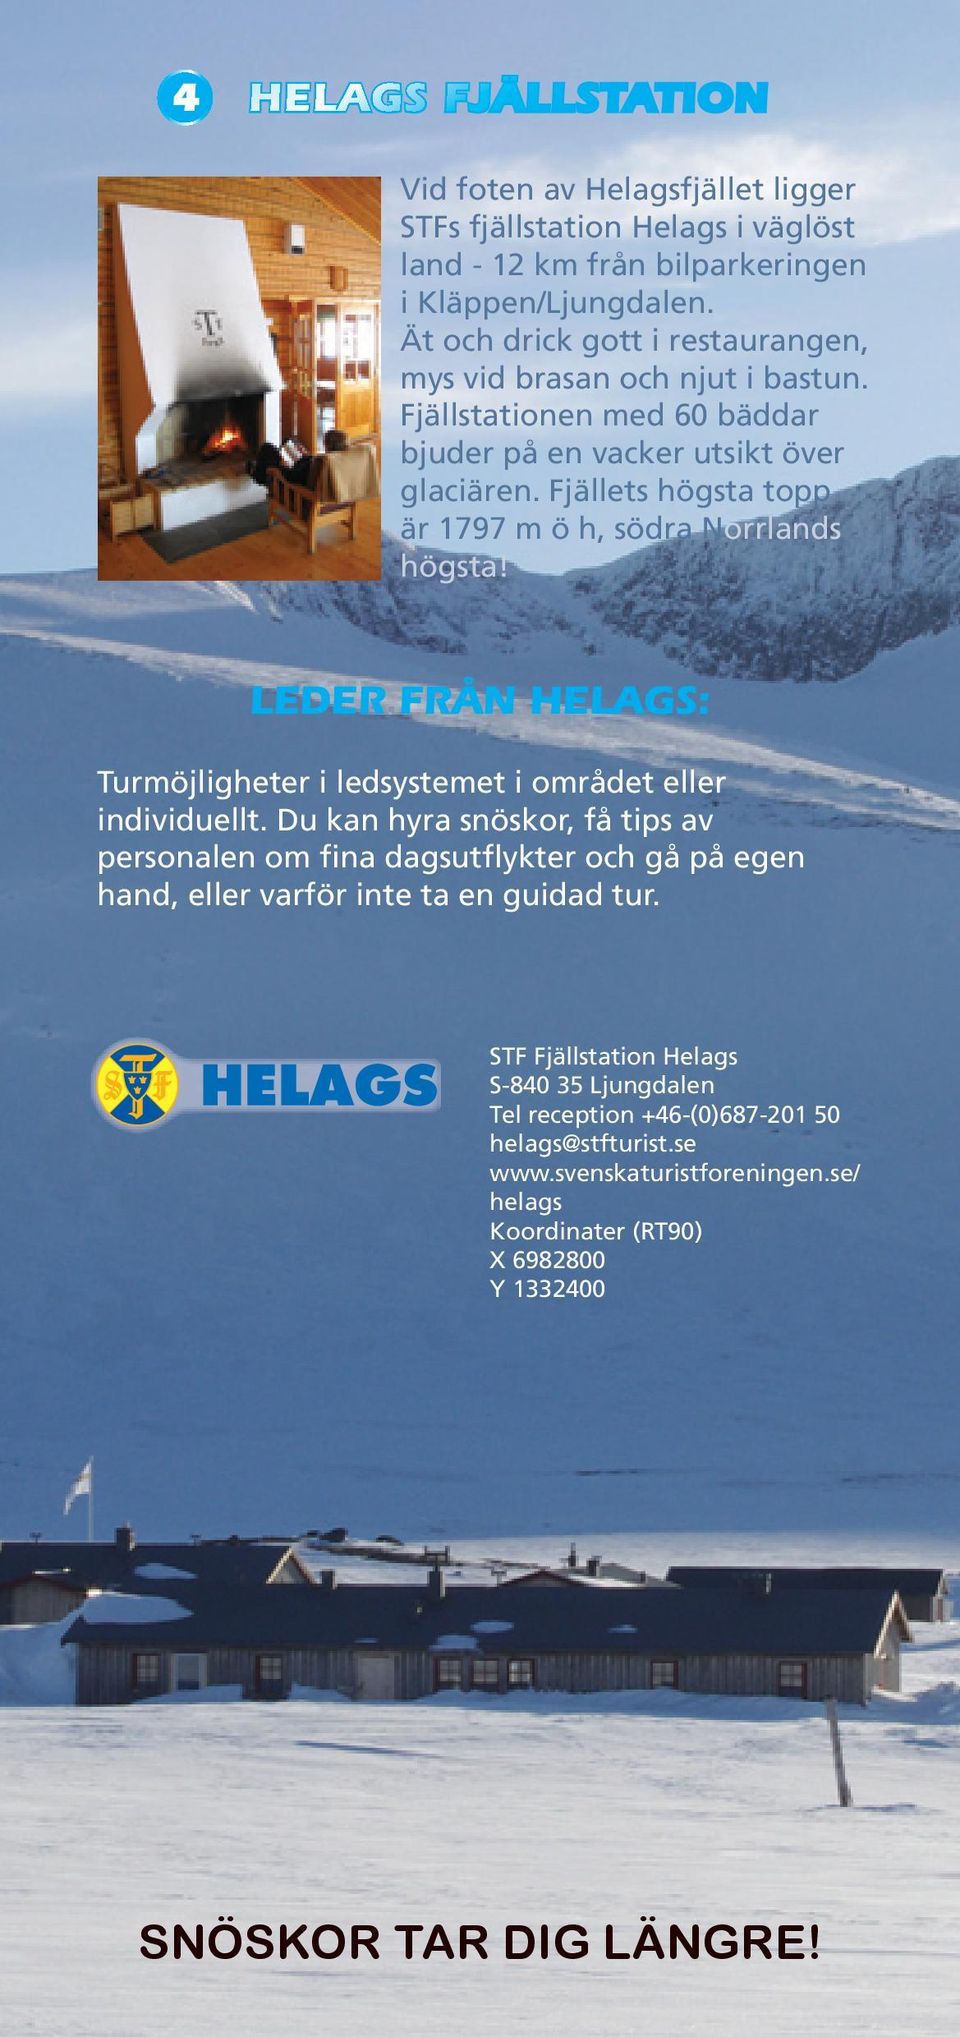 Fjällets högsta topp är 1797 m ö h, södra Norrlands högsta! LEDER FRÅN HELAGS: Turmöjligheter i ledsystemet i området eller individuellt.